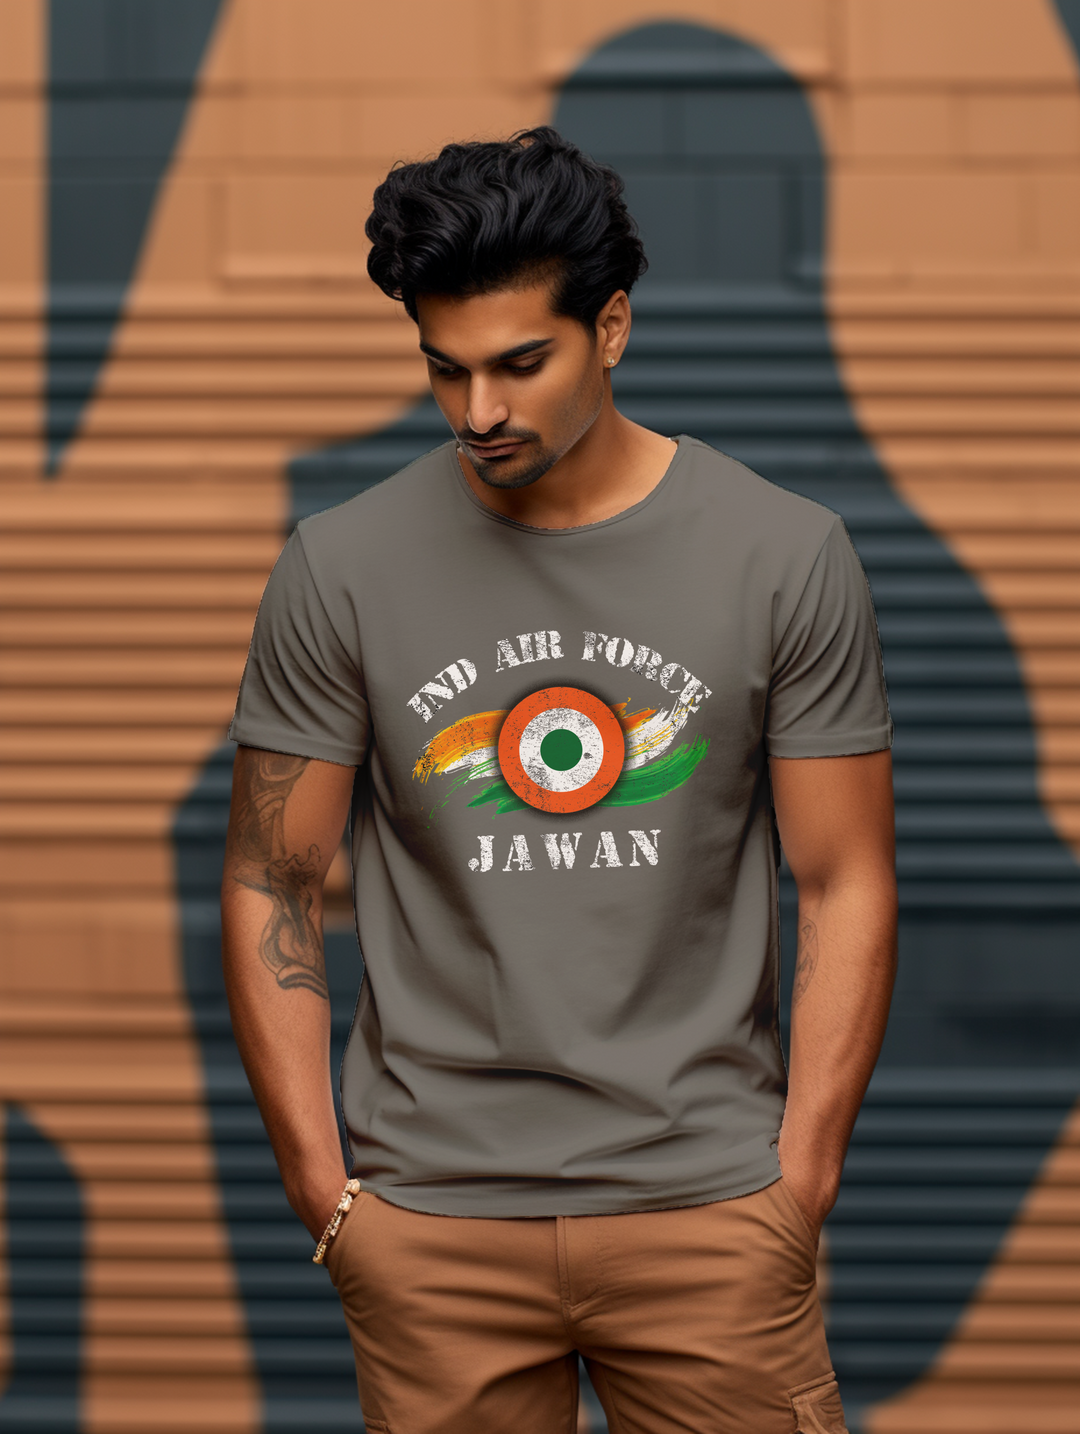 Men's IND Airforce Jawan tee